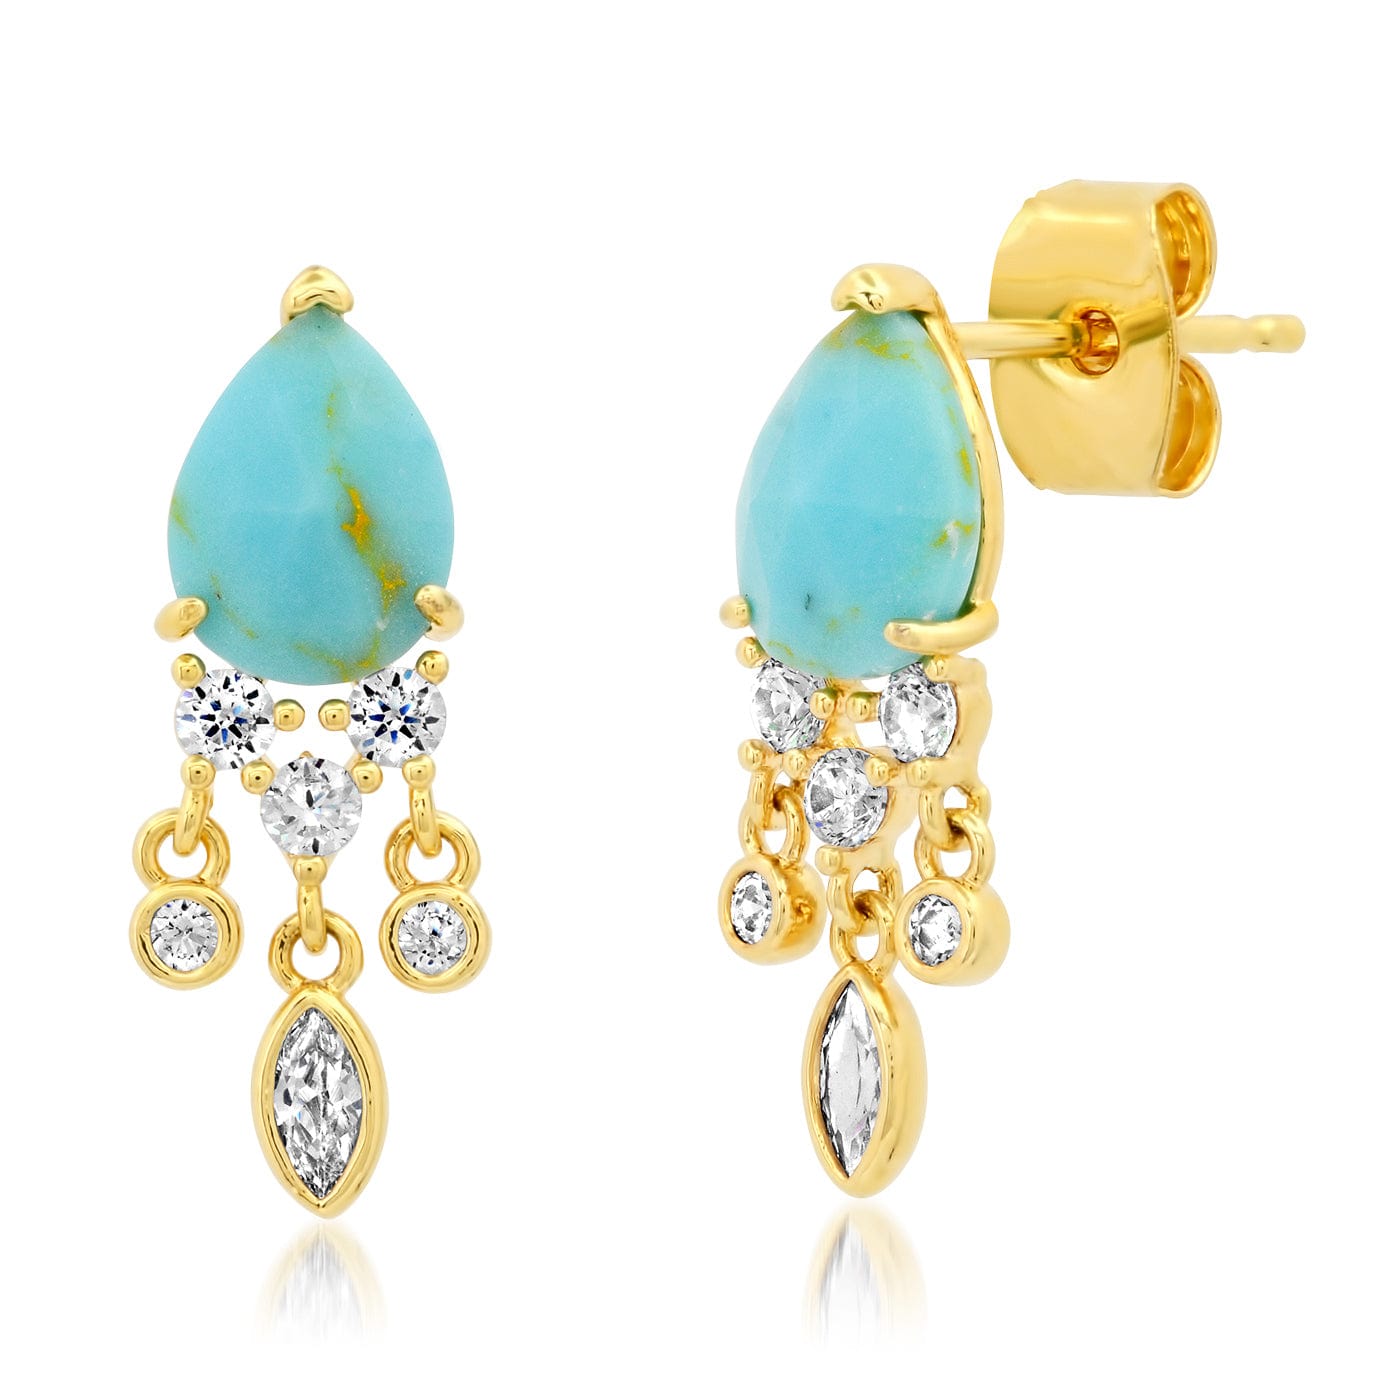 TAI JEWELRY Earrings TURQUOISE Stone Drop Chandelier Earrings